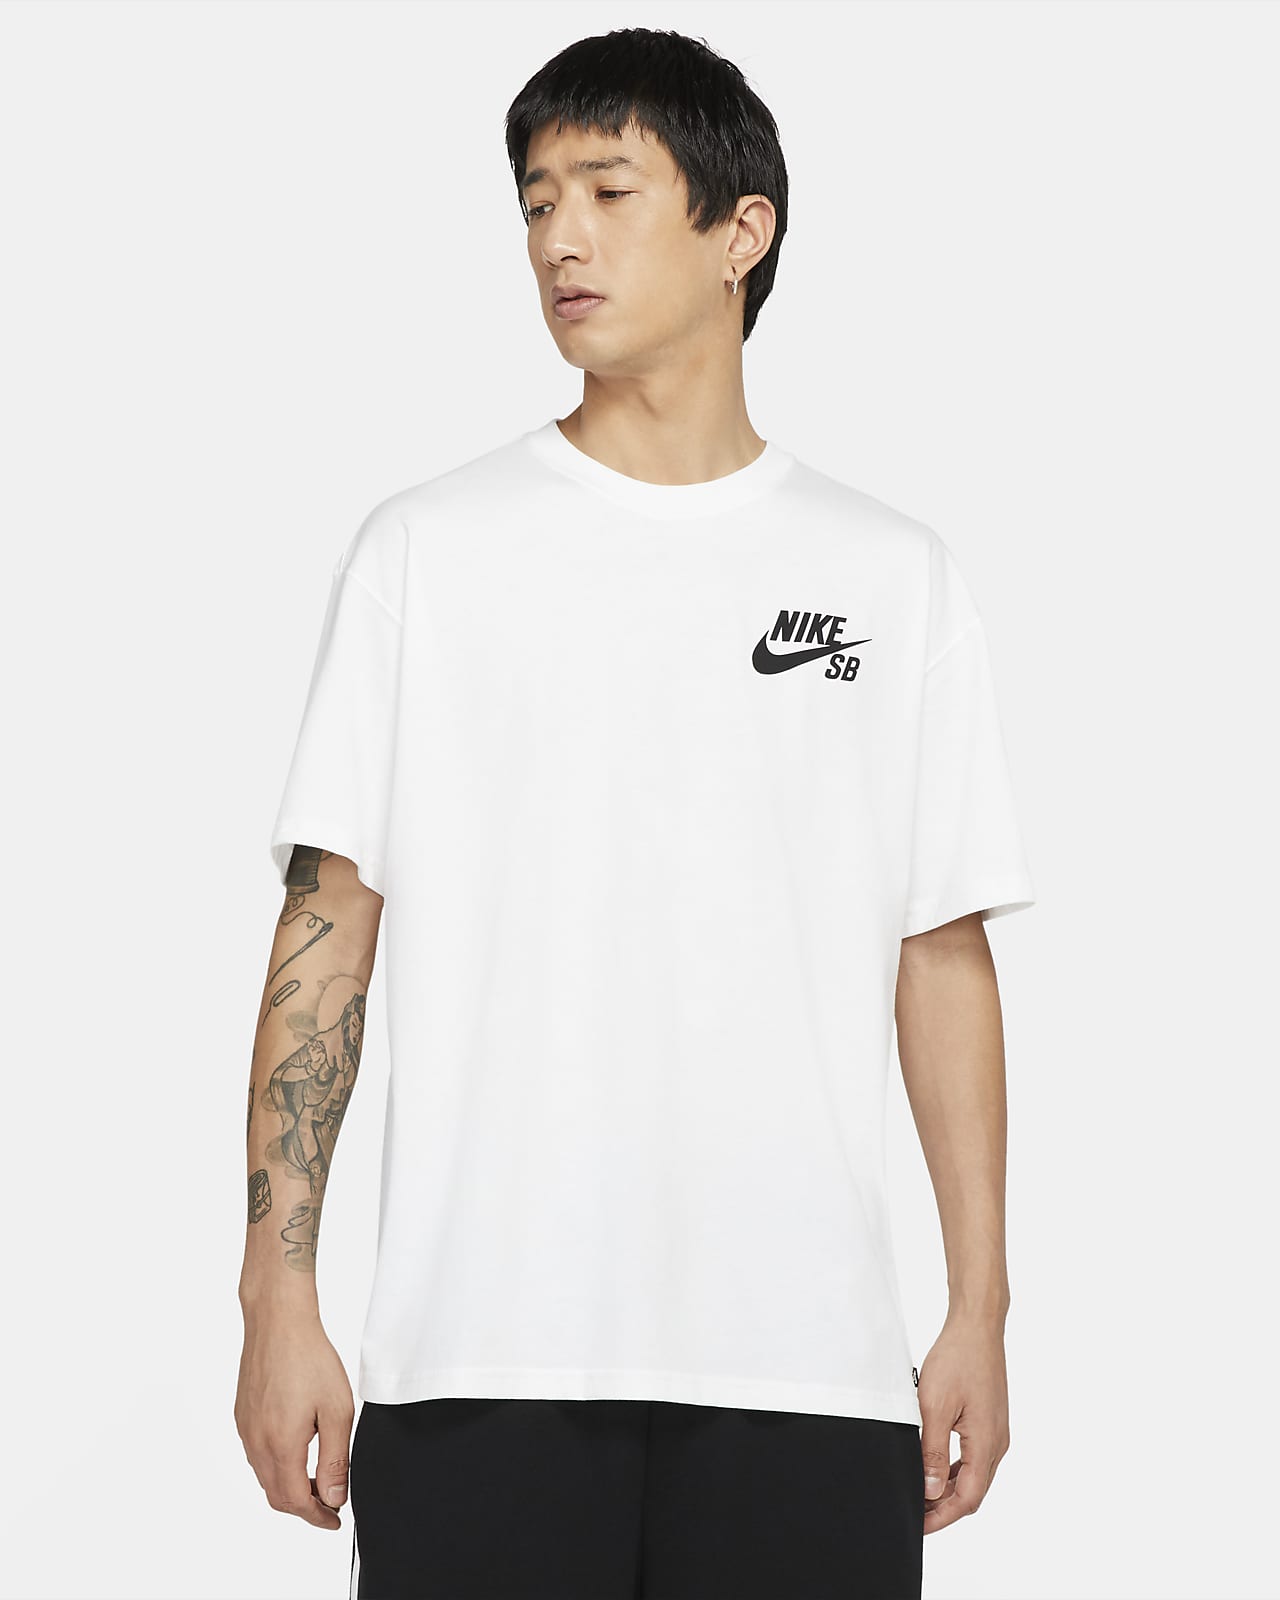 Nike SB emblémás, gördeszkás póló